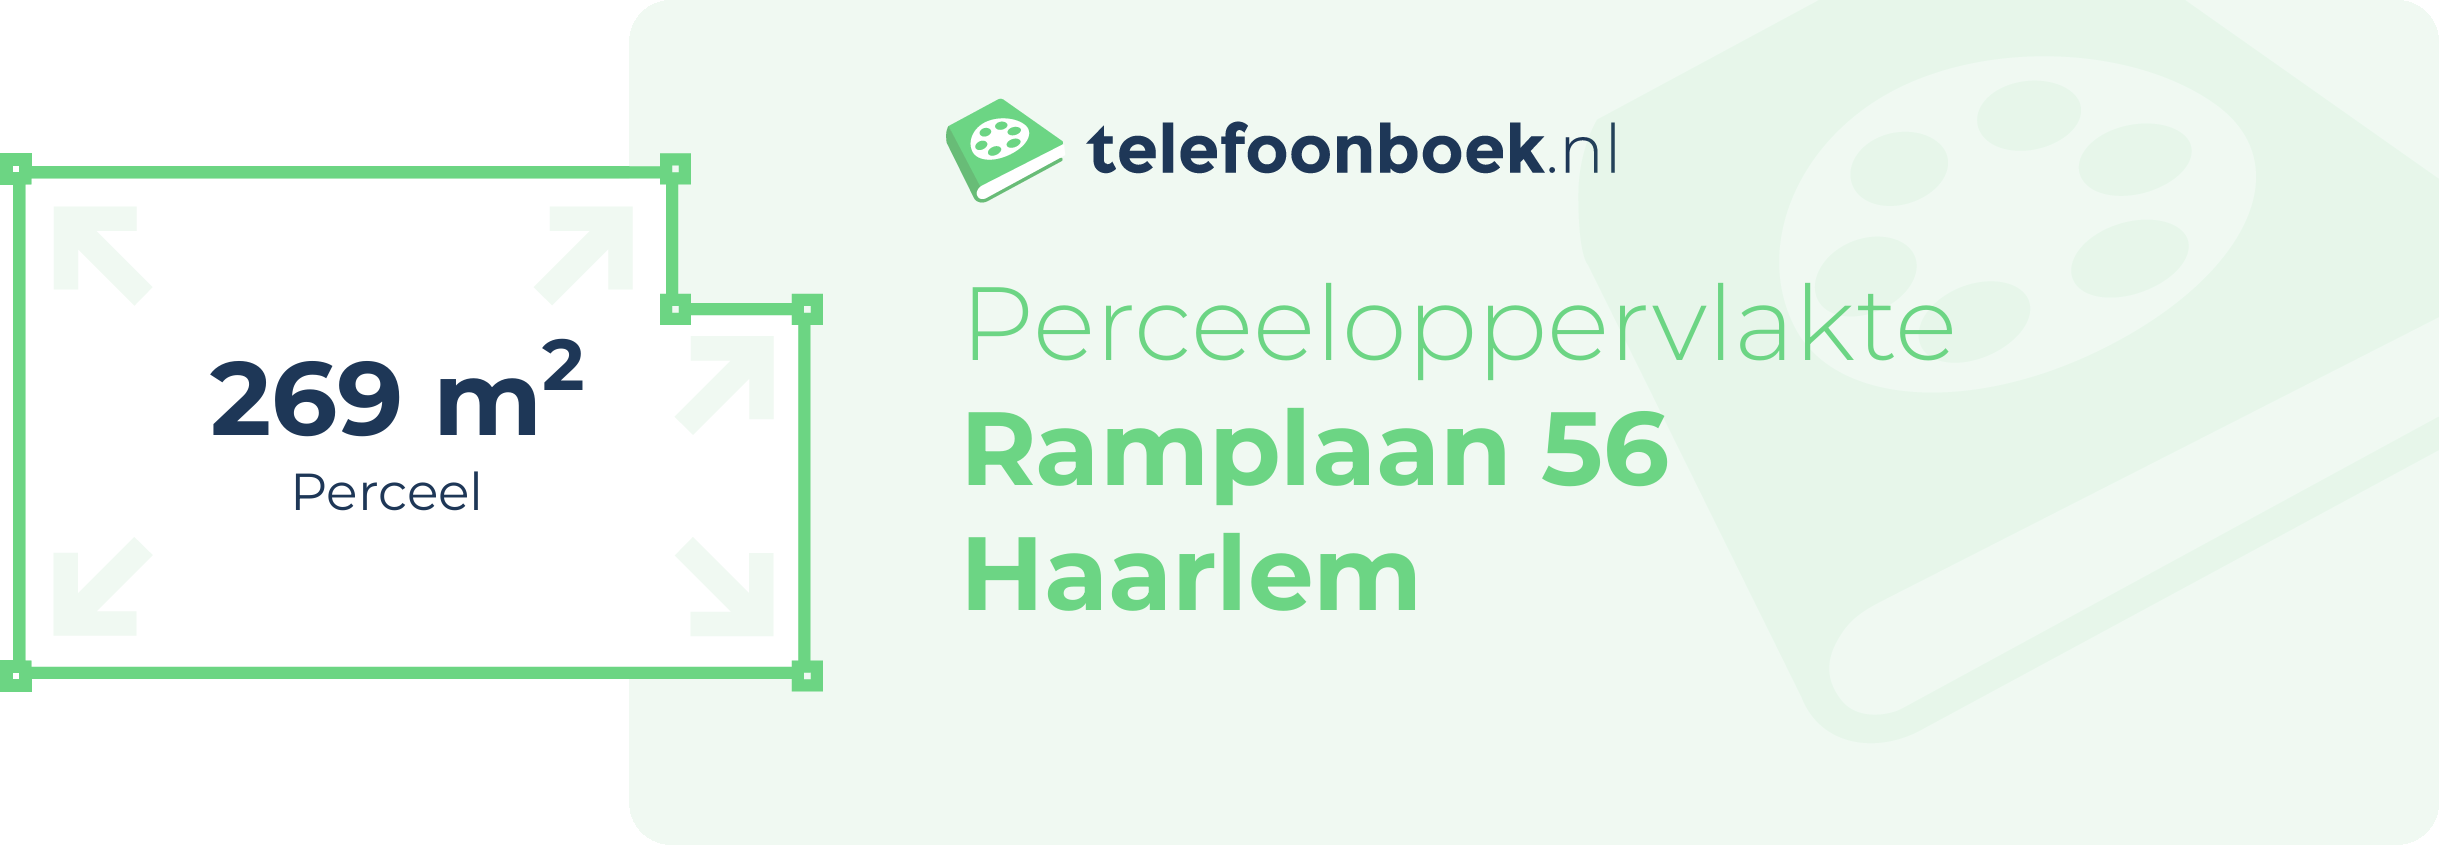 Perceeloppervlakte Ramplaan 56 Haarlem